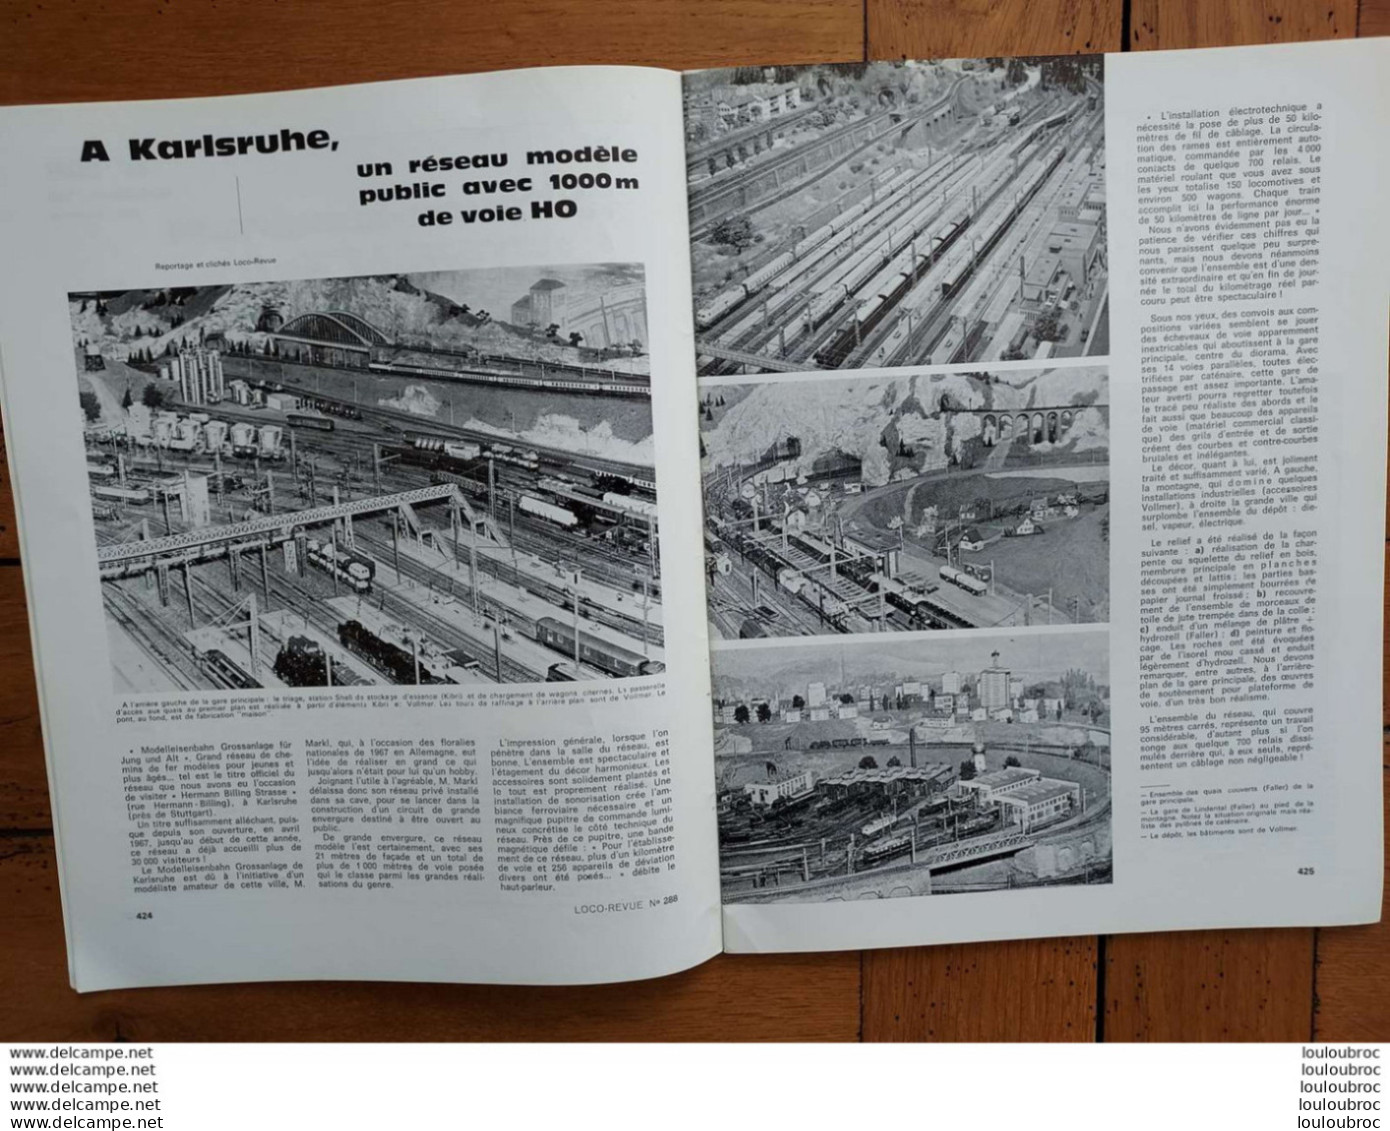 LOCO REVUE N°288 DE 1968 AMATEURS DE CHEMINS DE FER ET DE MODELISME PARFAIT ETAT - Eisenbahnen & Bahnwesen